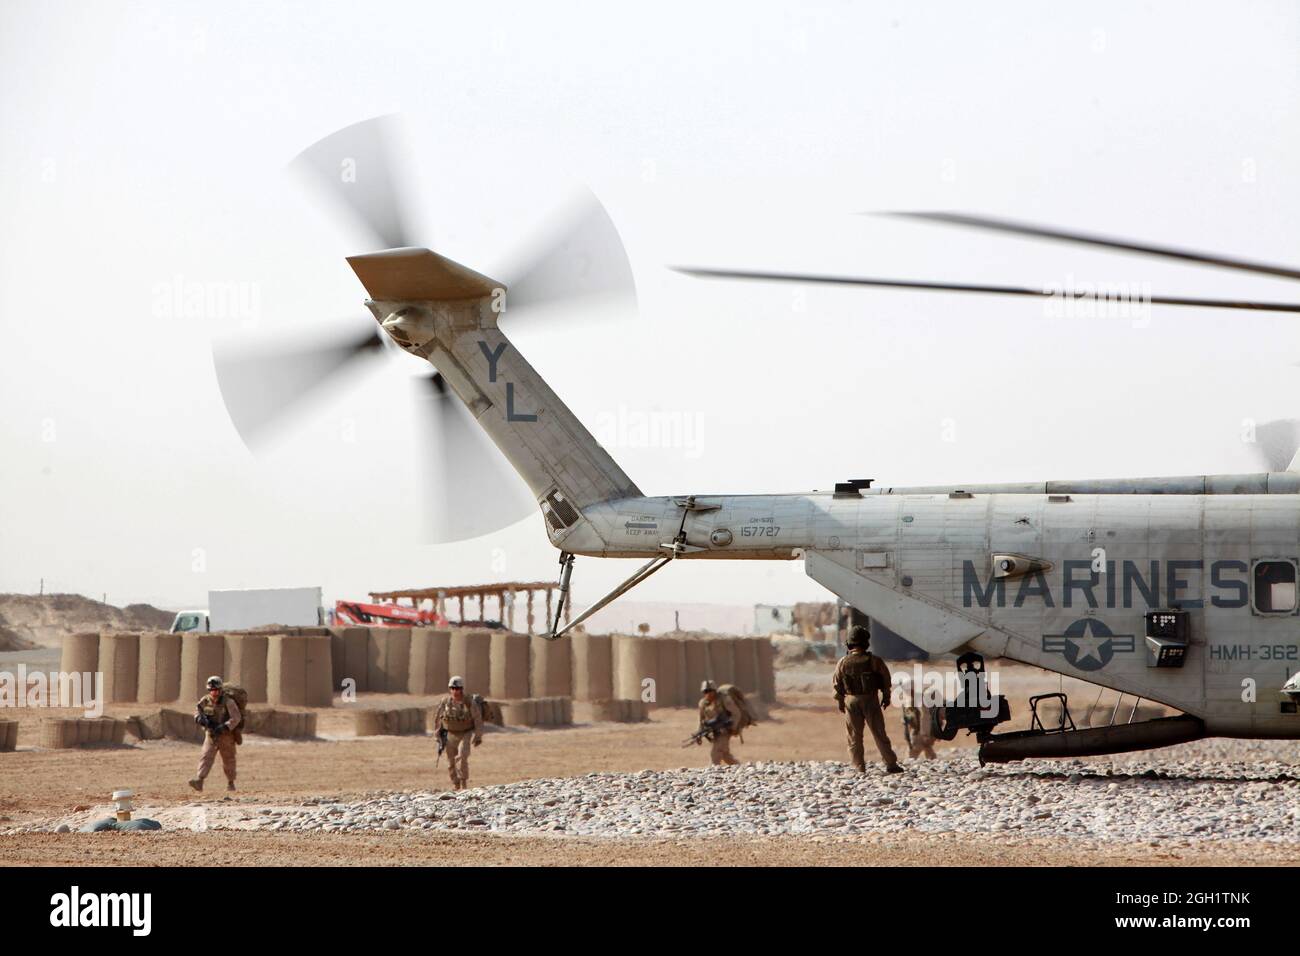 Le 20 juin 2012, les Marines des États-Unis du 3e Bataillon de reconnaissance légère (3e LAR) chargent sur un hélicoptère CH-53e de stalinlion de mer du 466 e Escadron d'hélicoptères lourds maritimes (HMH) de la 3e Escadre d'aéronefs maritimes (Forward) pour exécuter l'Op Halberd V dans la province de Helmand, en Afghanistan. Le HMLA-469 a assuré la reconnaissance aérienne et la sécurité des Marines de la 3e LAR pendant l'opération Halberd V afin d'empêcher la distribution de la contrebande à l'appui des opérations de lutte contre l'insurrection. Banque D'Images